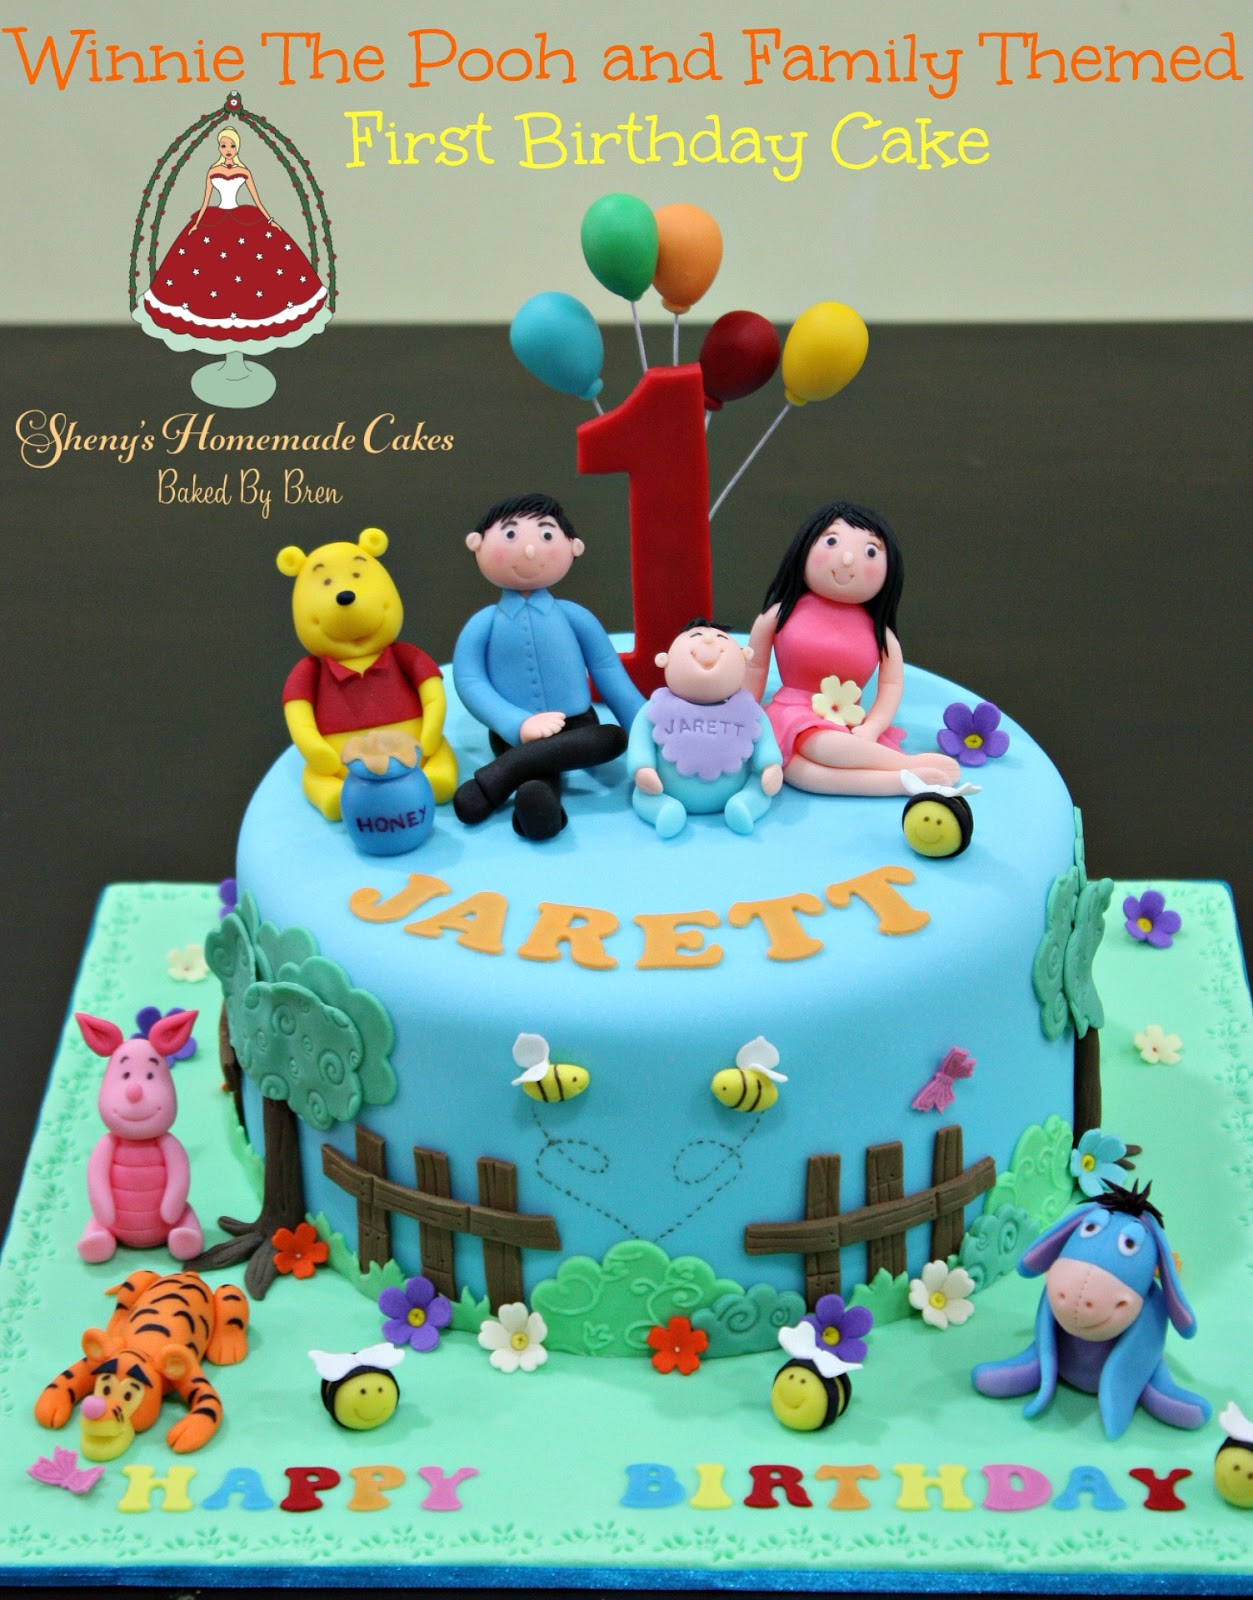 Sheny's Homemade Treats Winnie The Pooh Family Themed 1st Birthday Cake